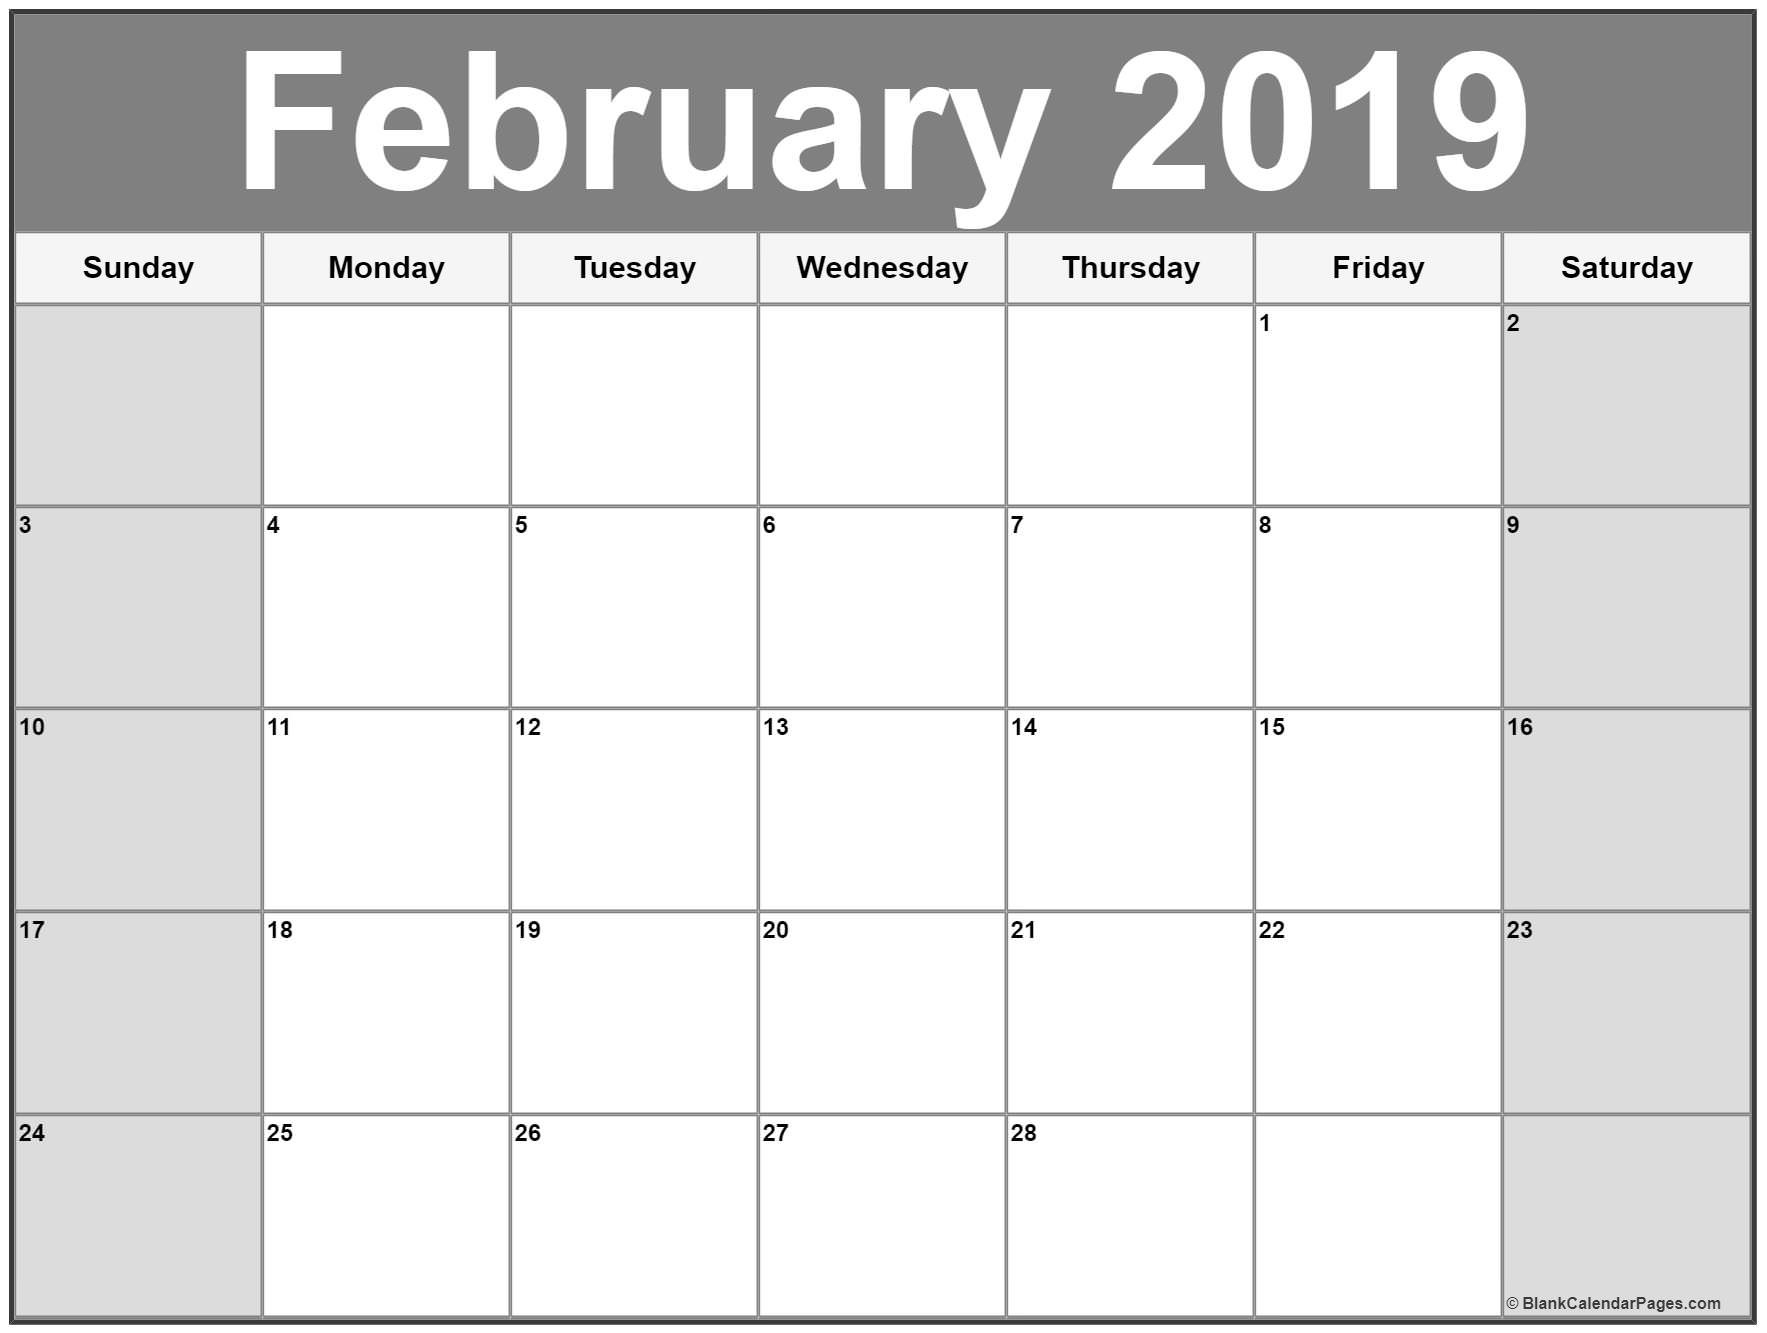 Free Printable Calendar Feb 2019 February 2019 Calendar